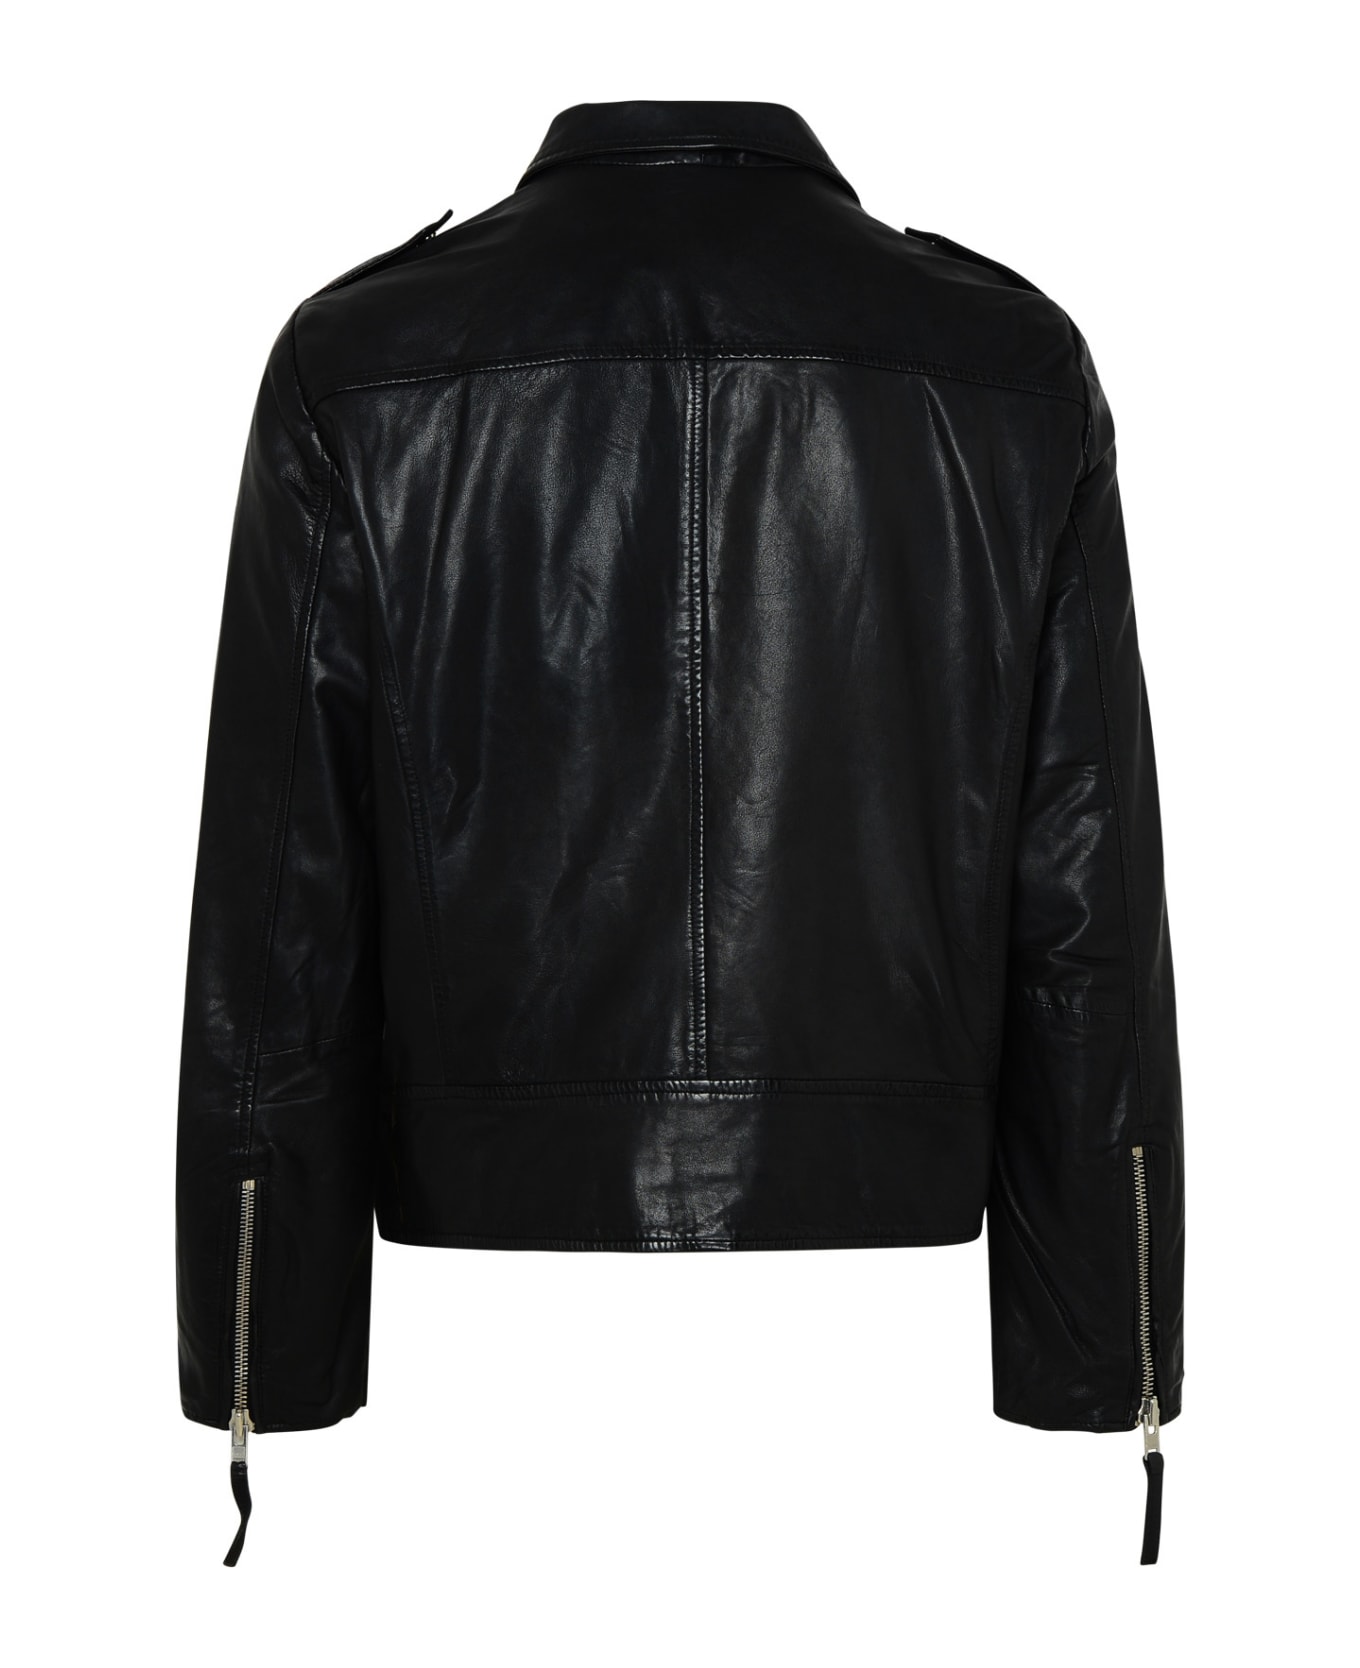 Bully Black Genuine Leather Jacket - Black レザージャケット